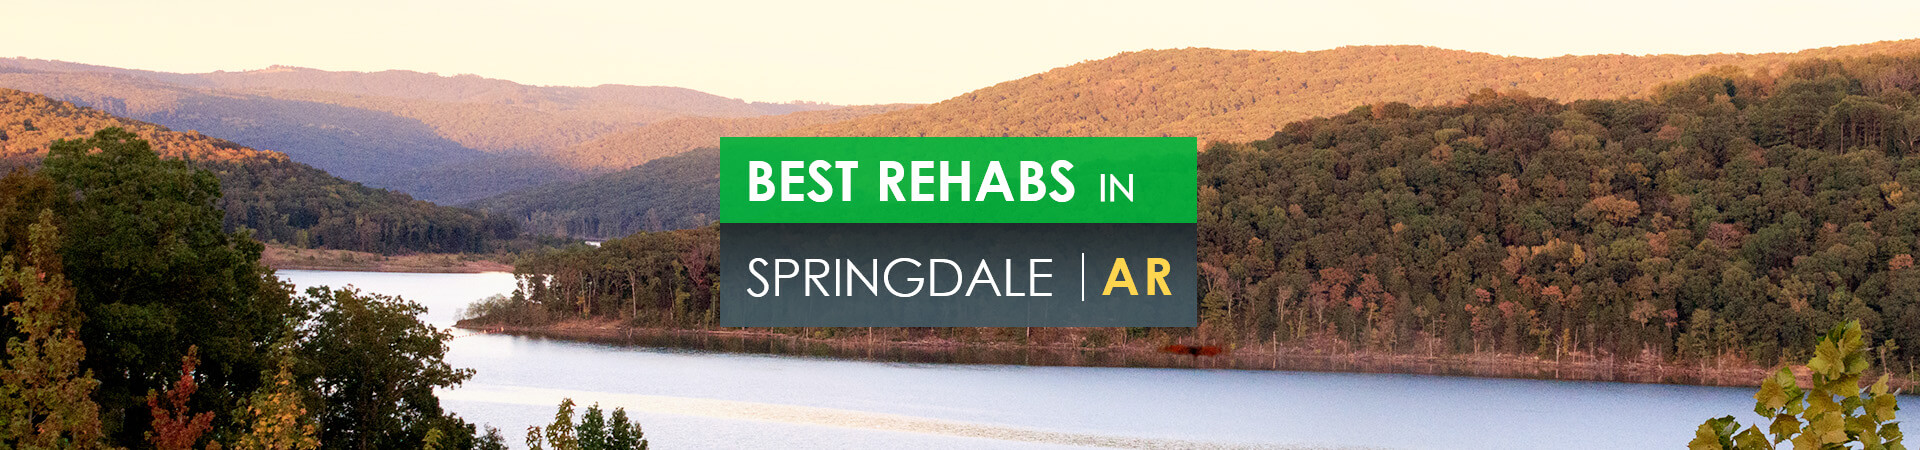 Best rehabs in Springdale, AR